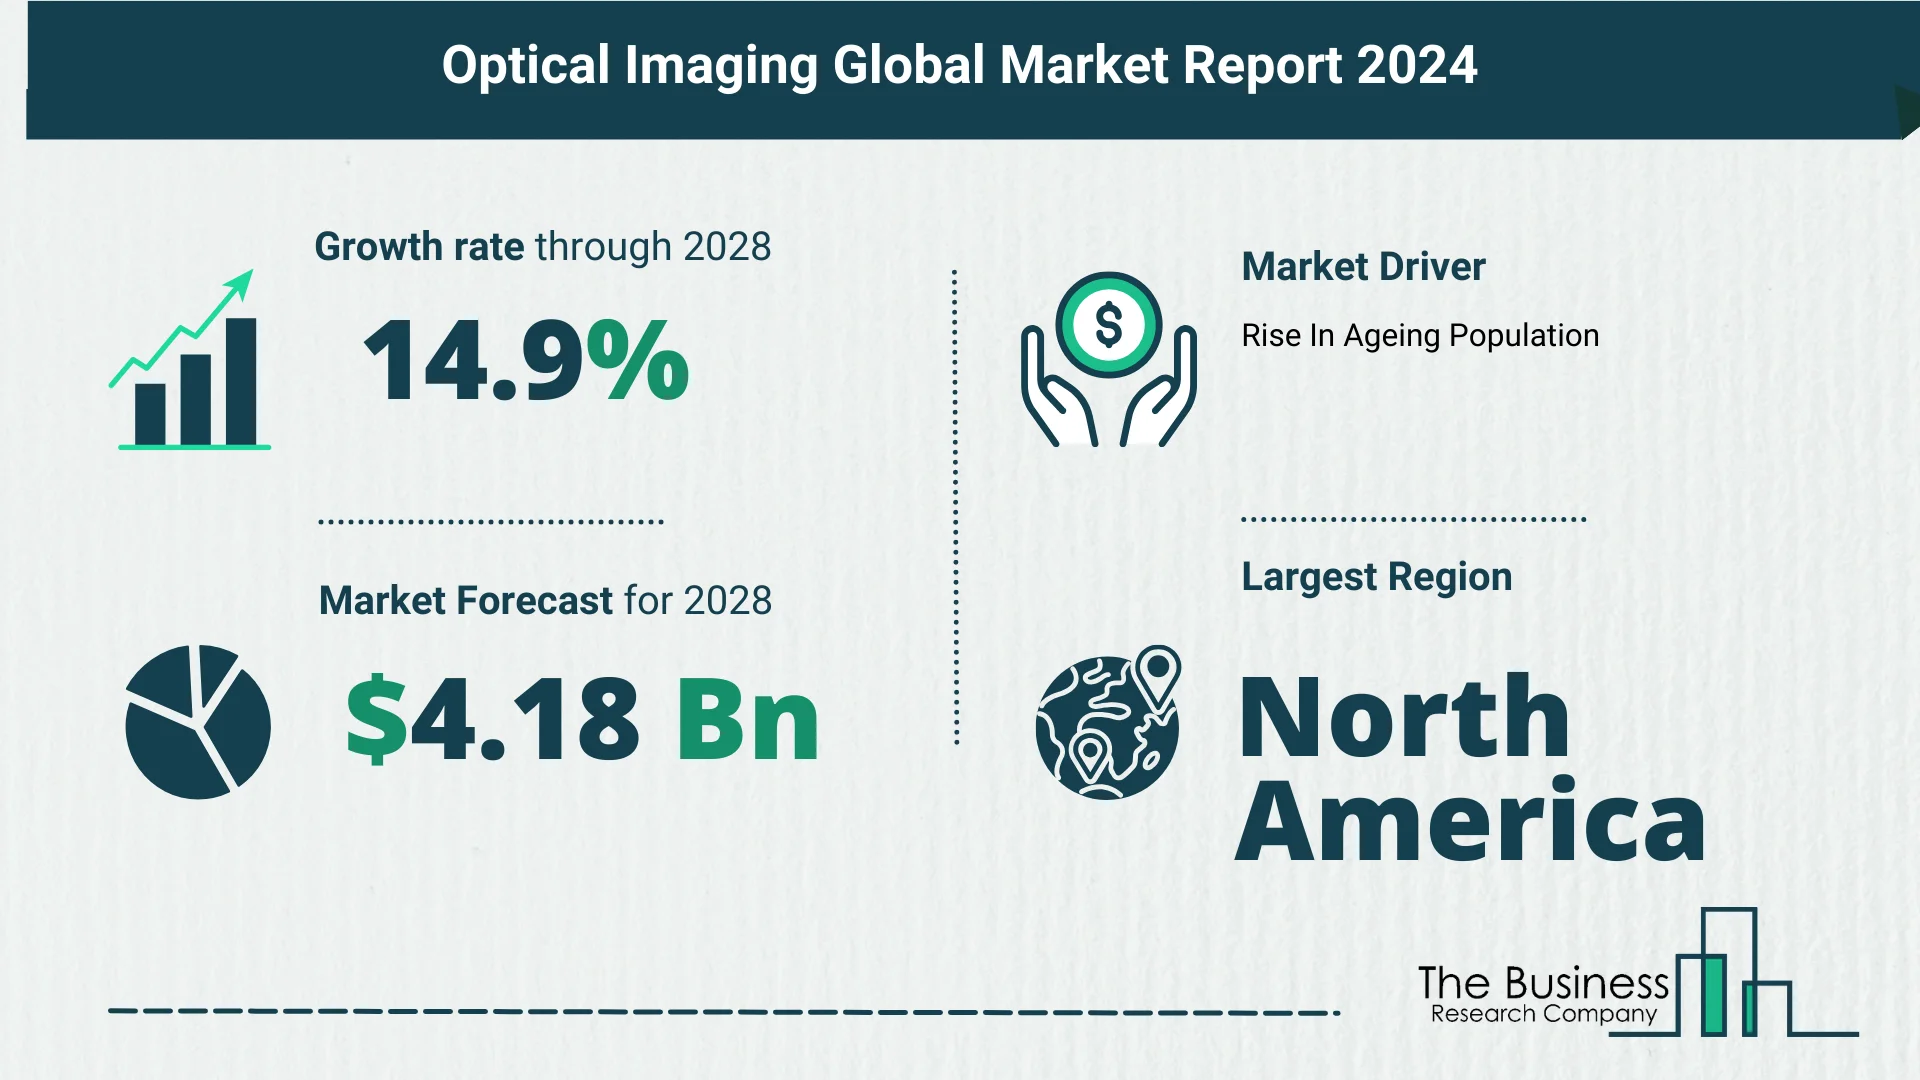 Global Optical Imaging Market Report